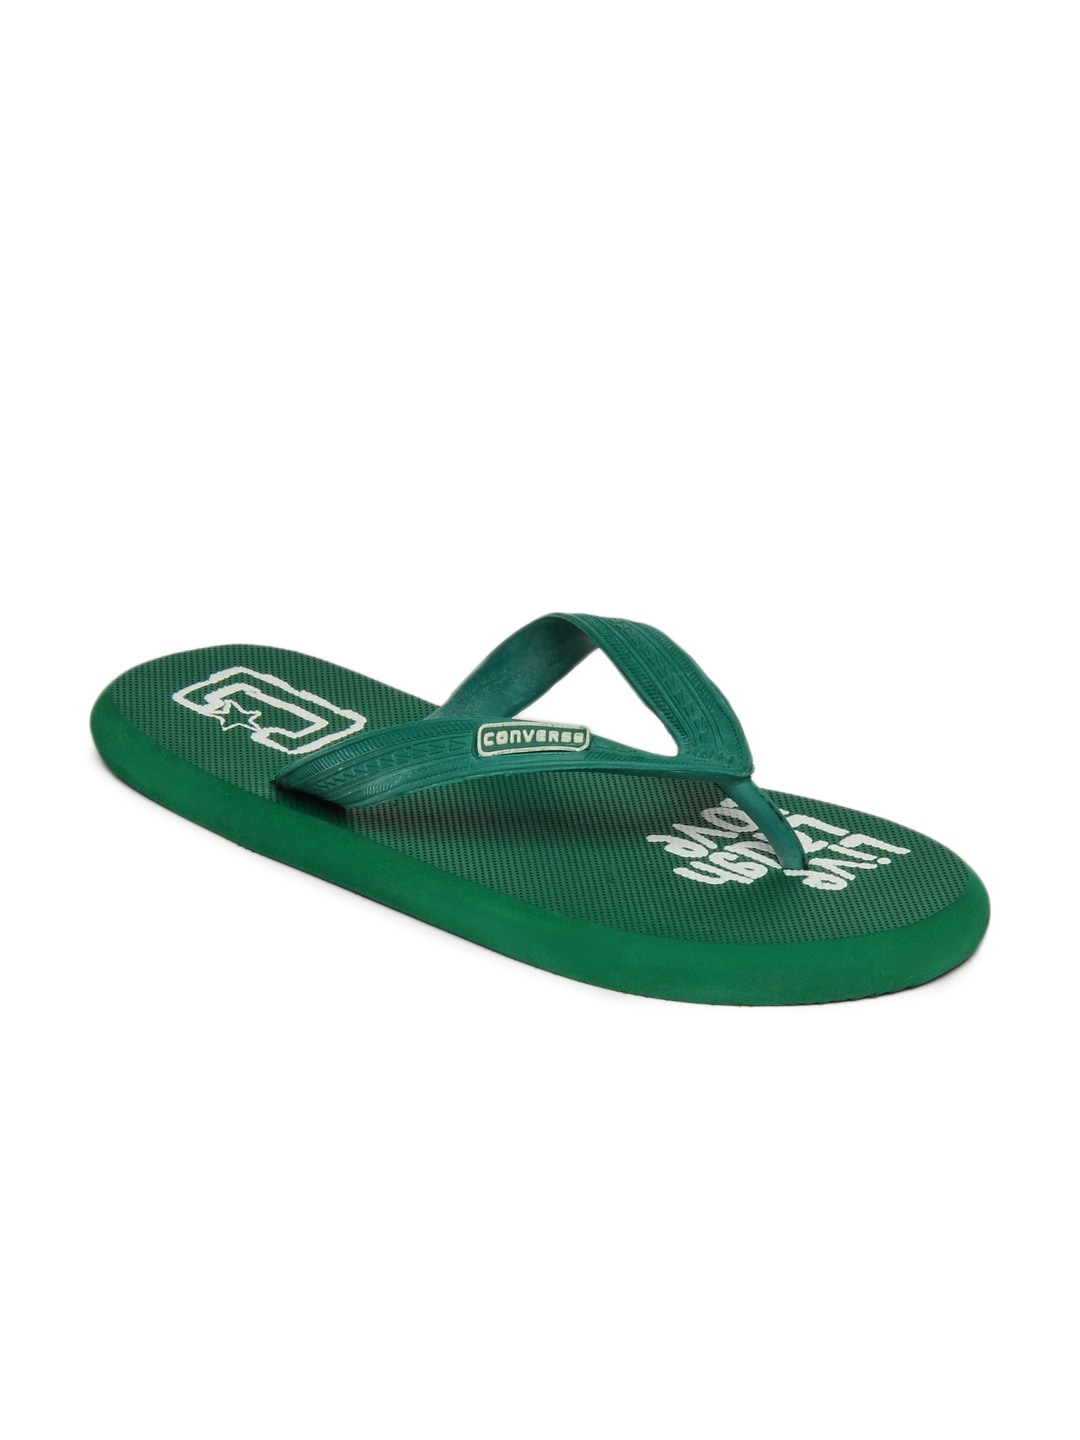 Converse Unisex Green Flip Flops